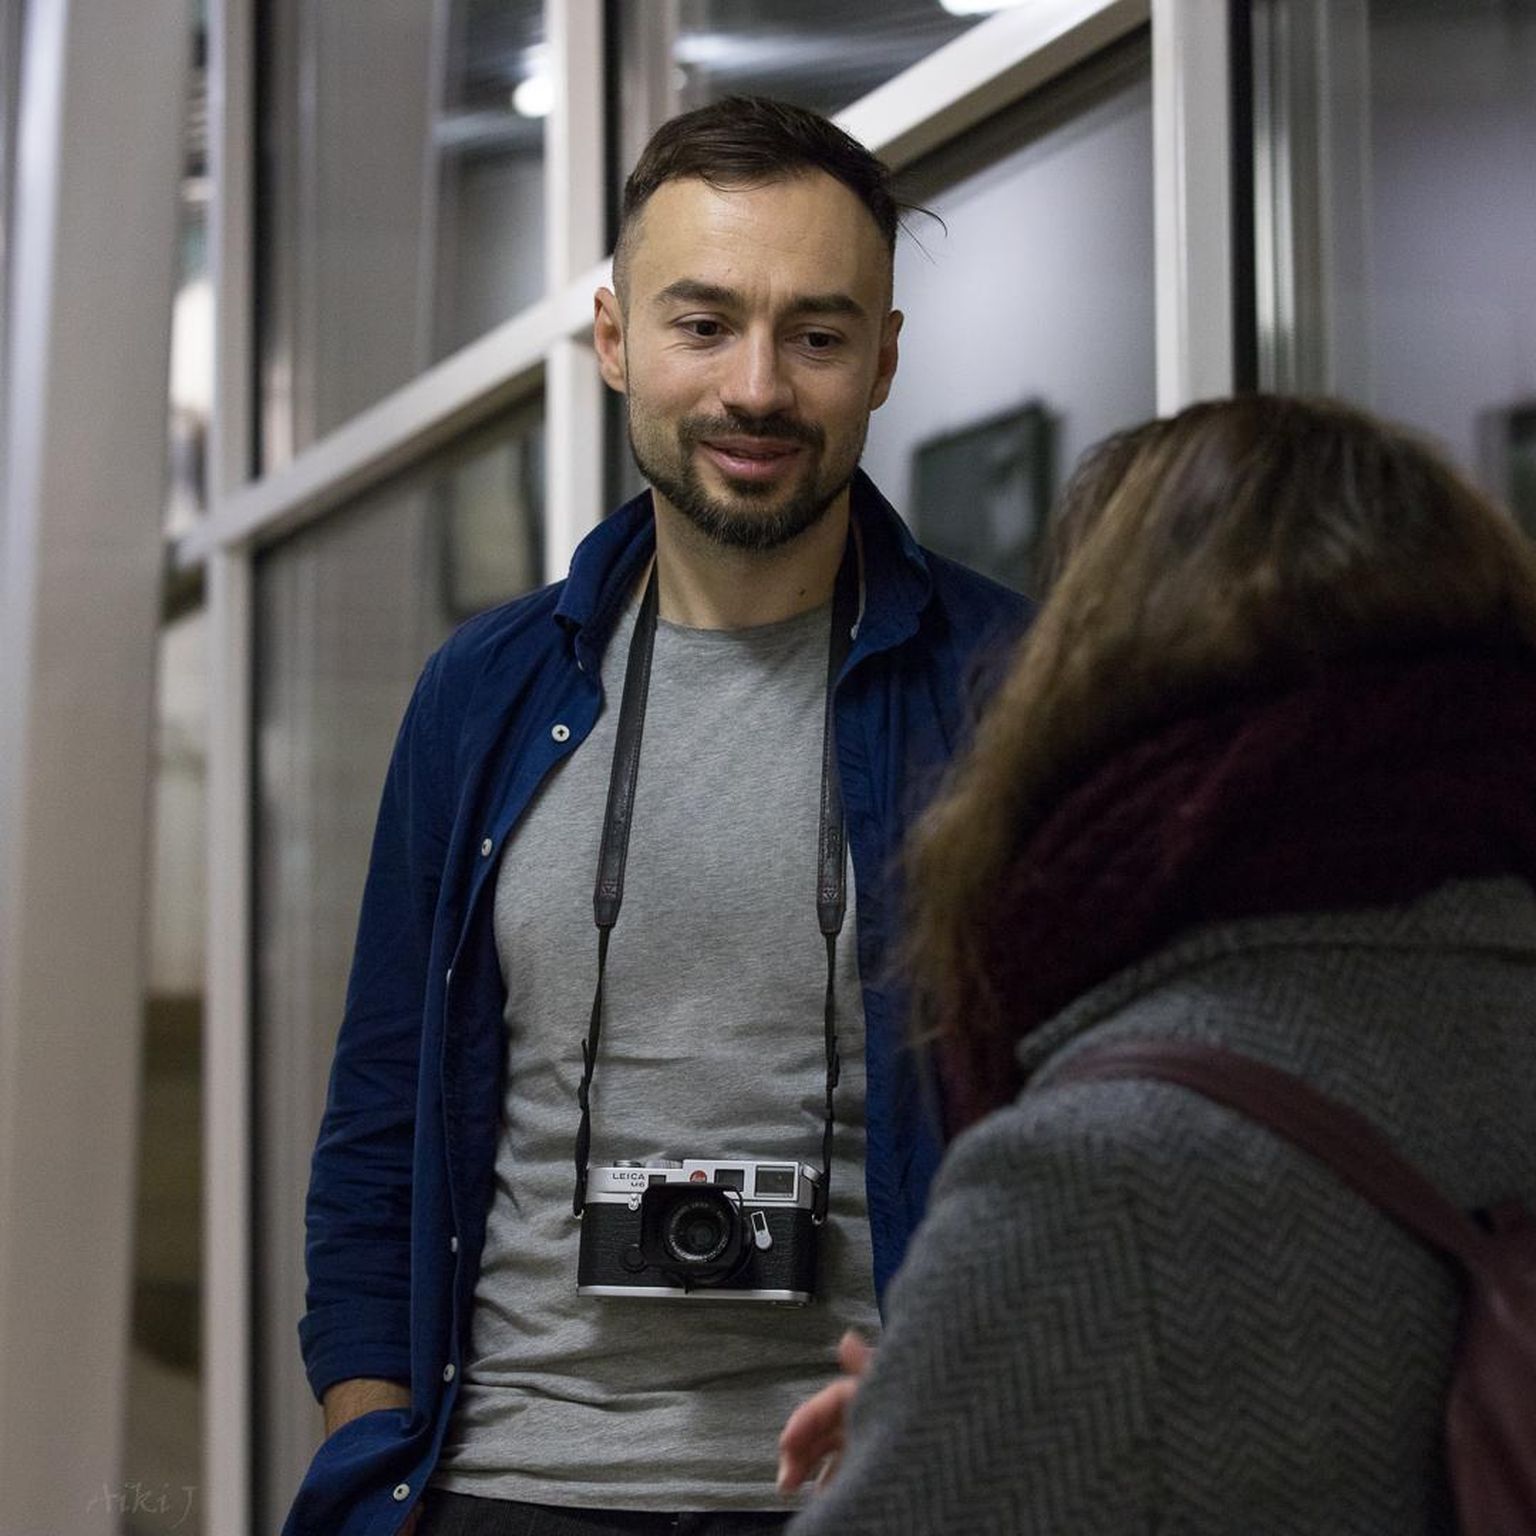 Eestis elav Ukraina päritolu dokumentaal- ja tänavafotograaf Andrii Mur jagab Pärnu keskraamatukogus avatud näitusel kaameraga tabatud vaikseid võluvaid hetki, et lülitada tähelepanu infotulvast ehedale kogemusele.